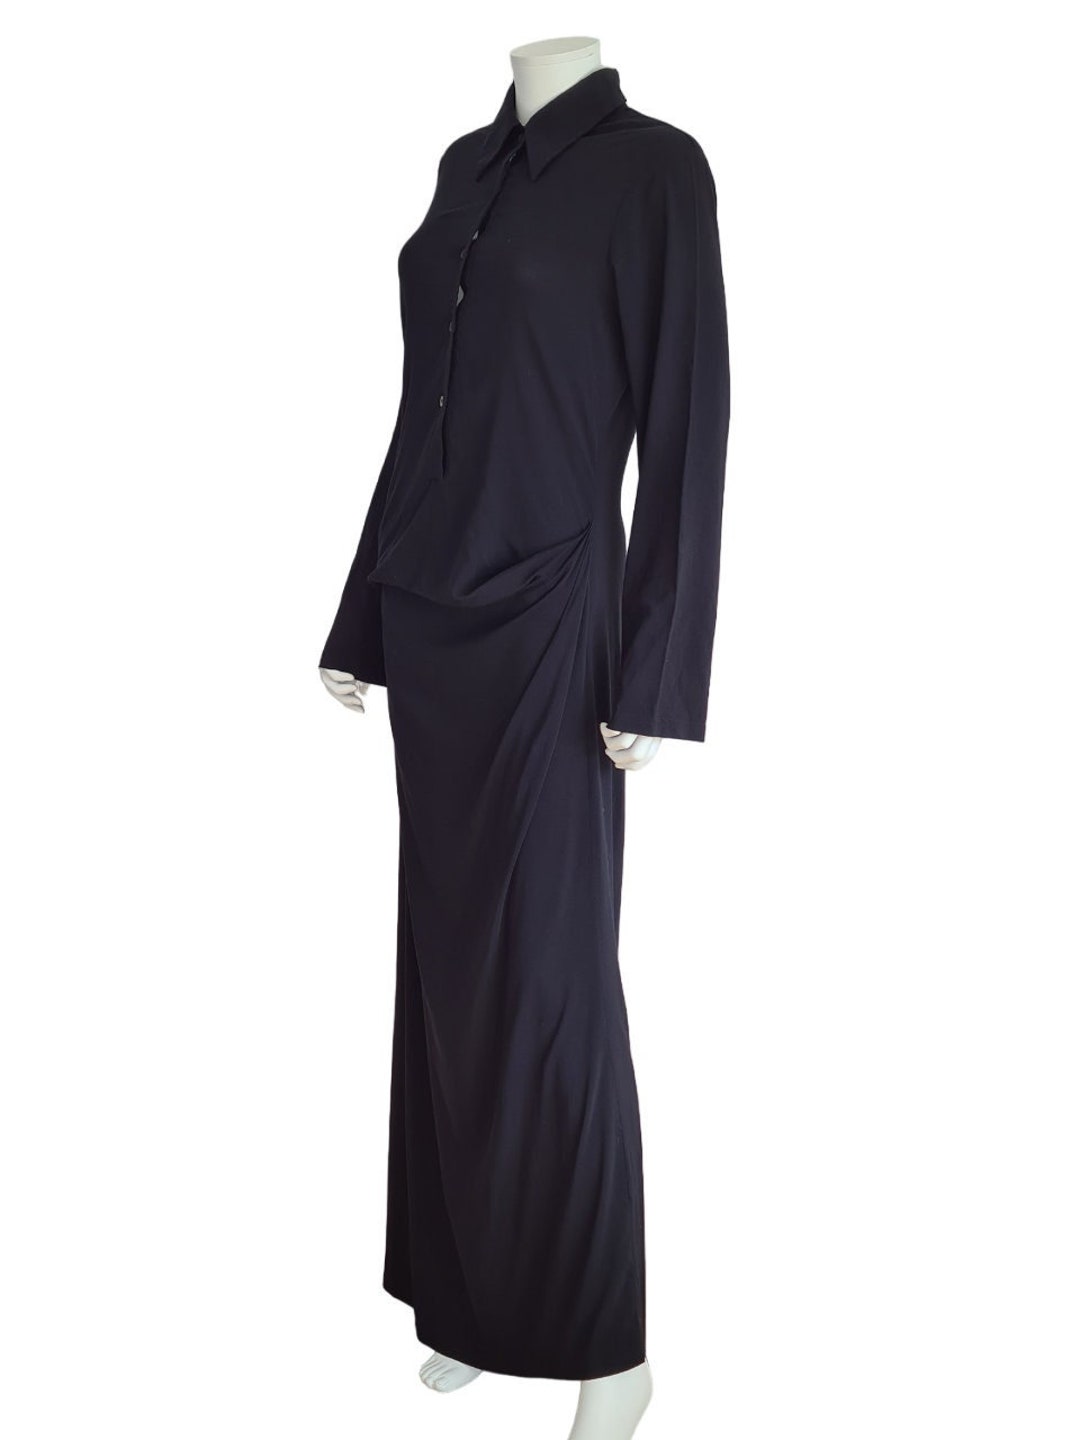 Ann Demeulemeester 1992-1997 Monastic Black Floor Length Dress - Etsy